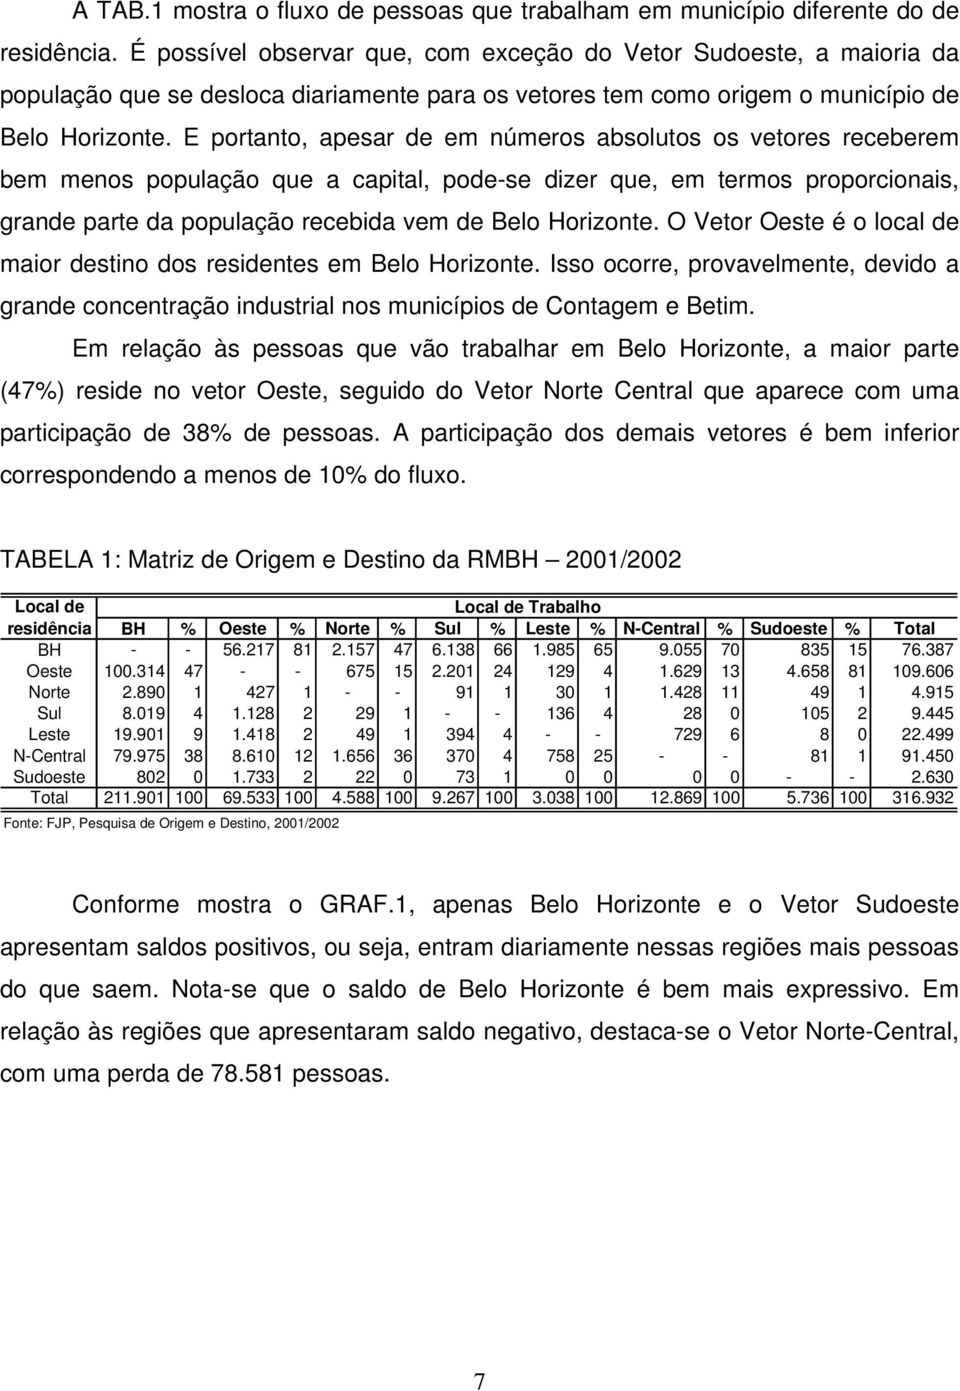 E portanto, apesar de em números absolutos os vetores receberem bem menos população que a capital, pode-se dizer que, em termos proporcionais, grande parte da população recebida vem de Belo Horizonte.